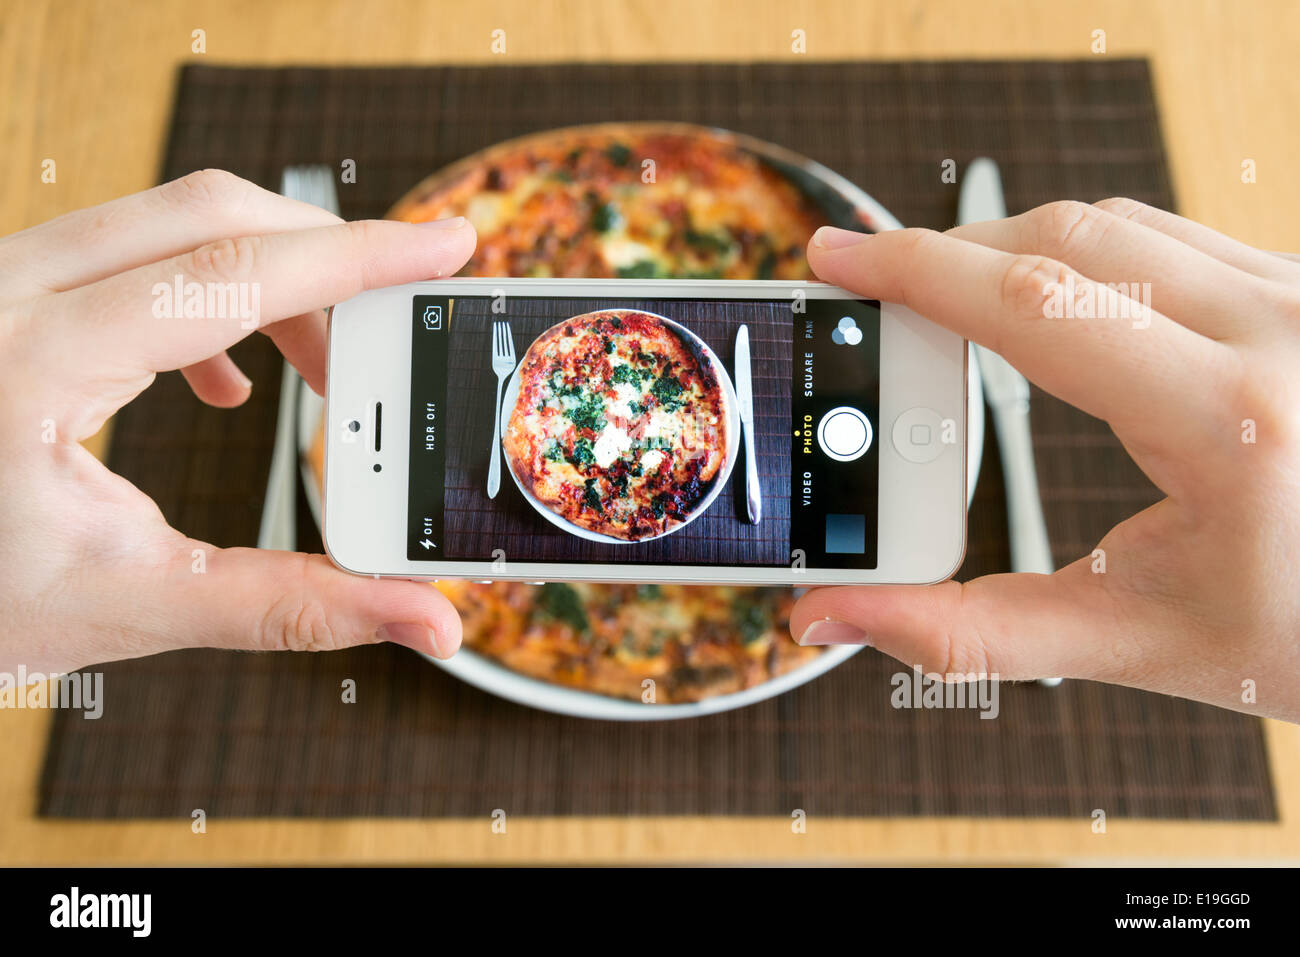 Tomar una foto de la comida de la pizza con la cámara blanca del teléfono inteligente del iPhone Foto de stock